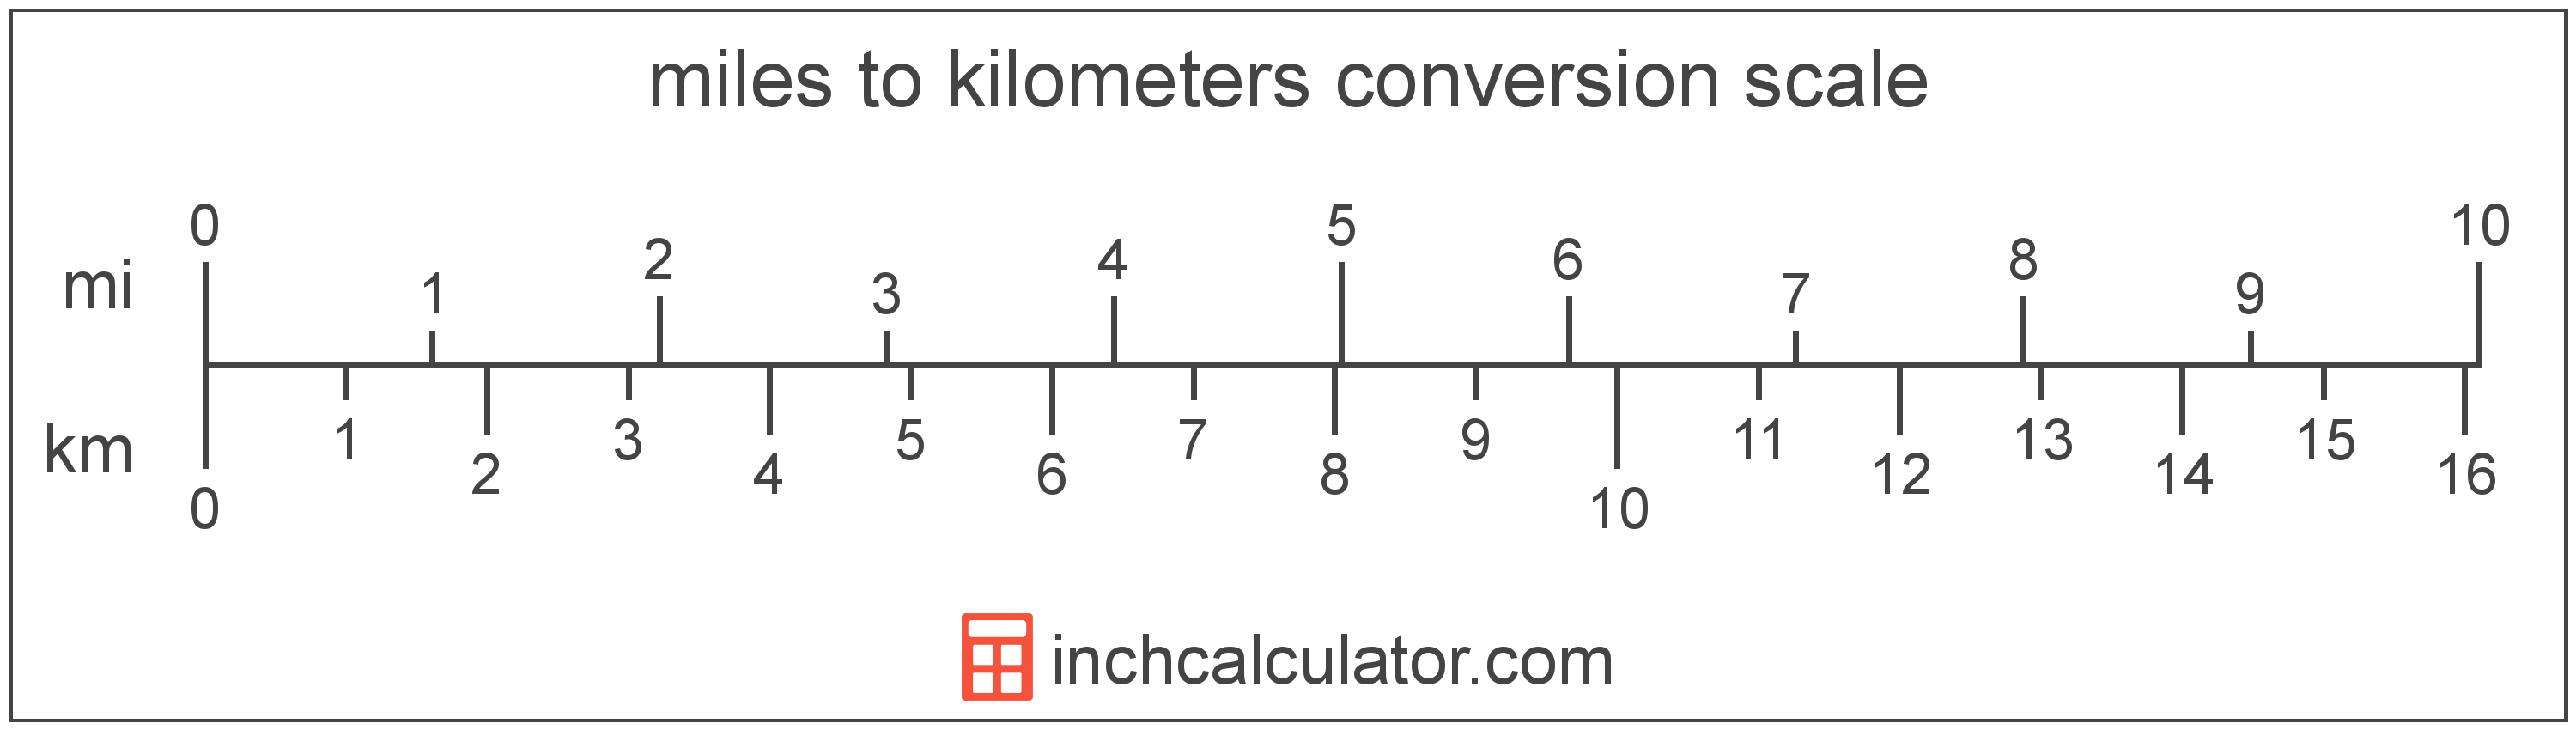 Mile To Kilometer Conversion Scale 